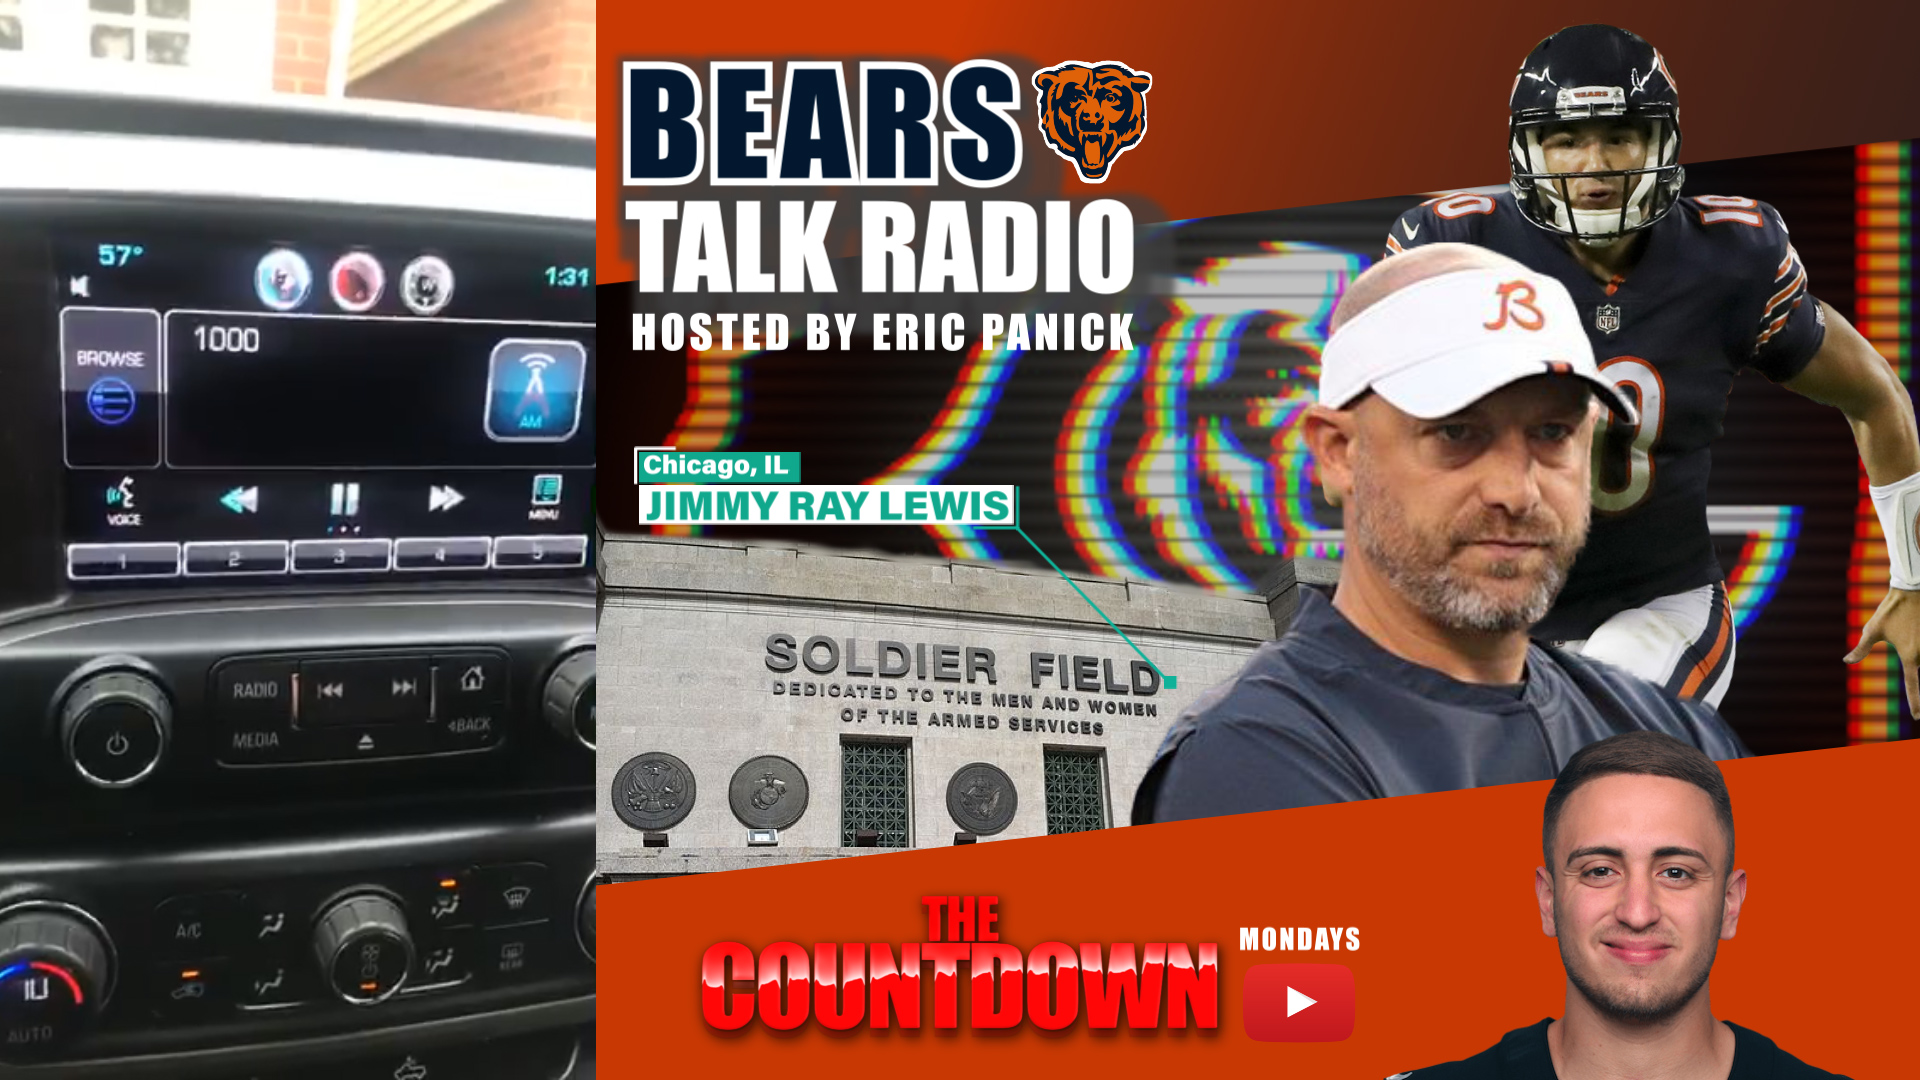 Packers Fan Trolls Bears Fans with “Bears Talk Radio”